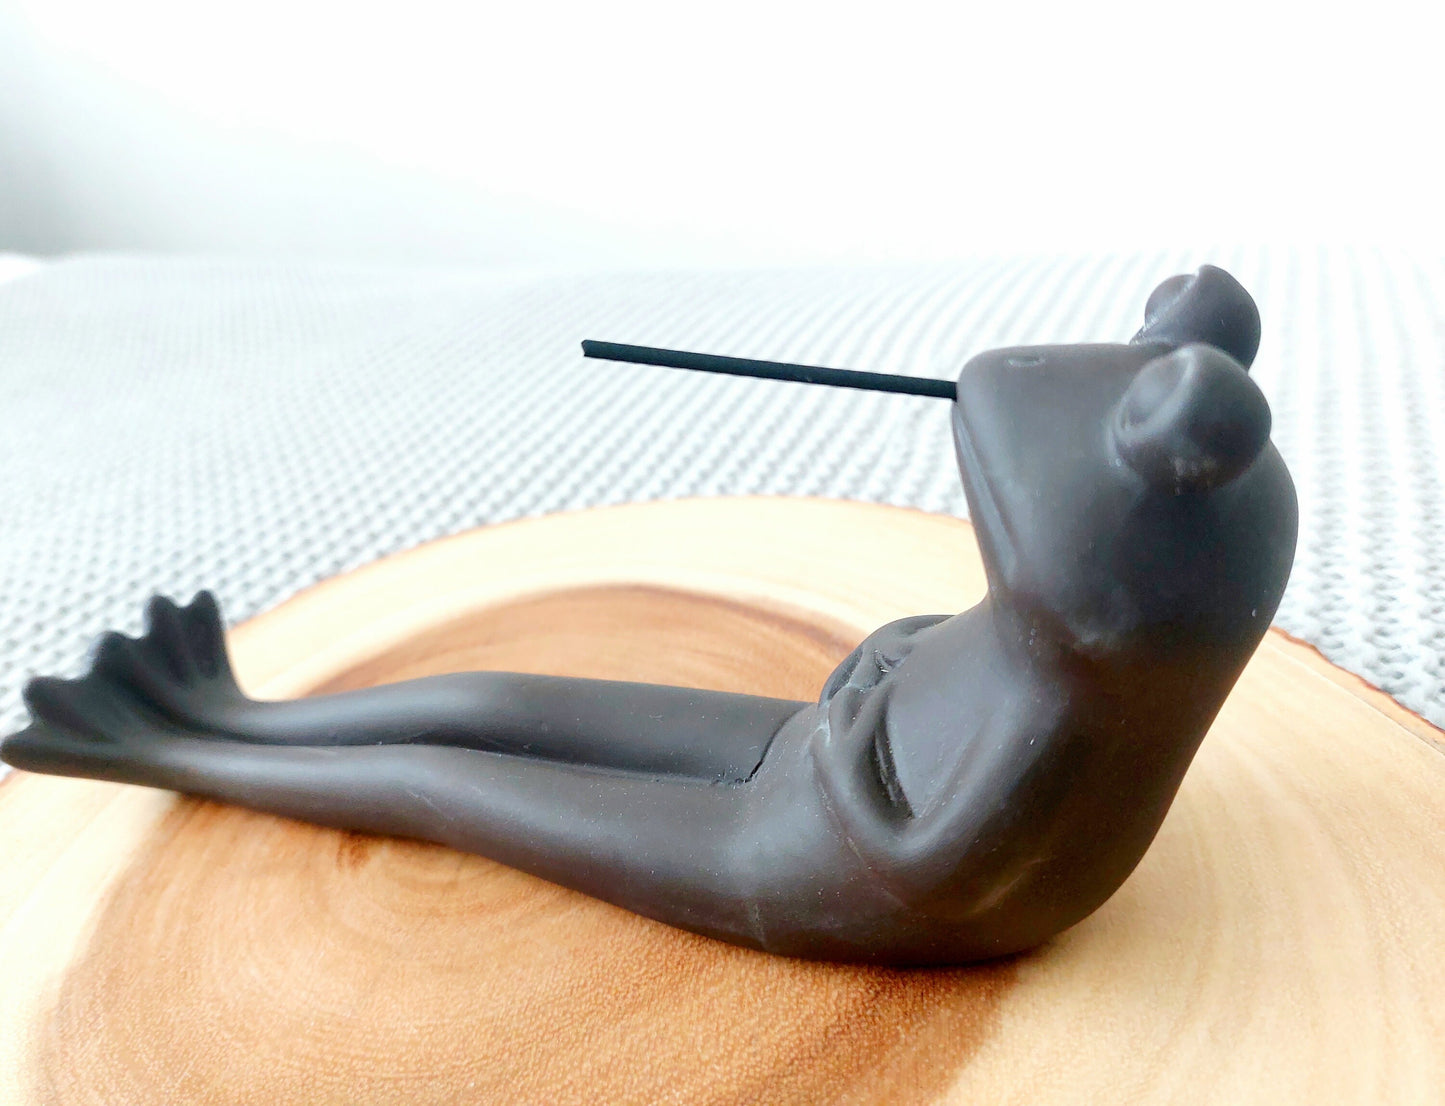 Relaxing Frog Incense Stick Burner / Holder